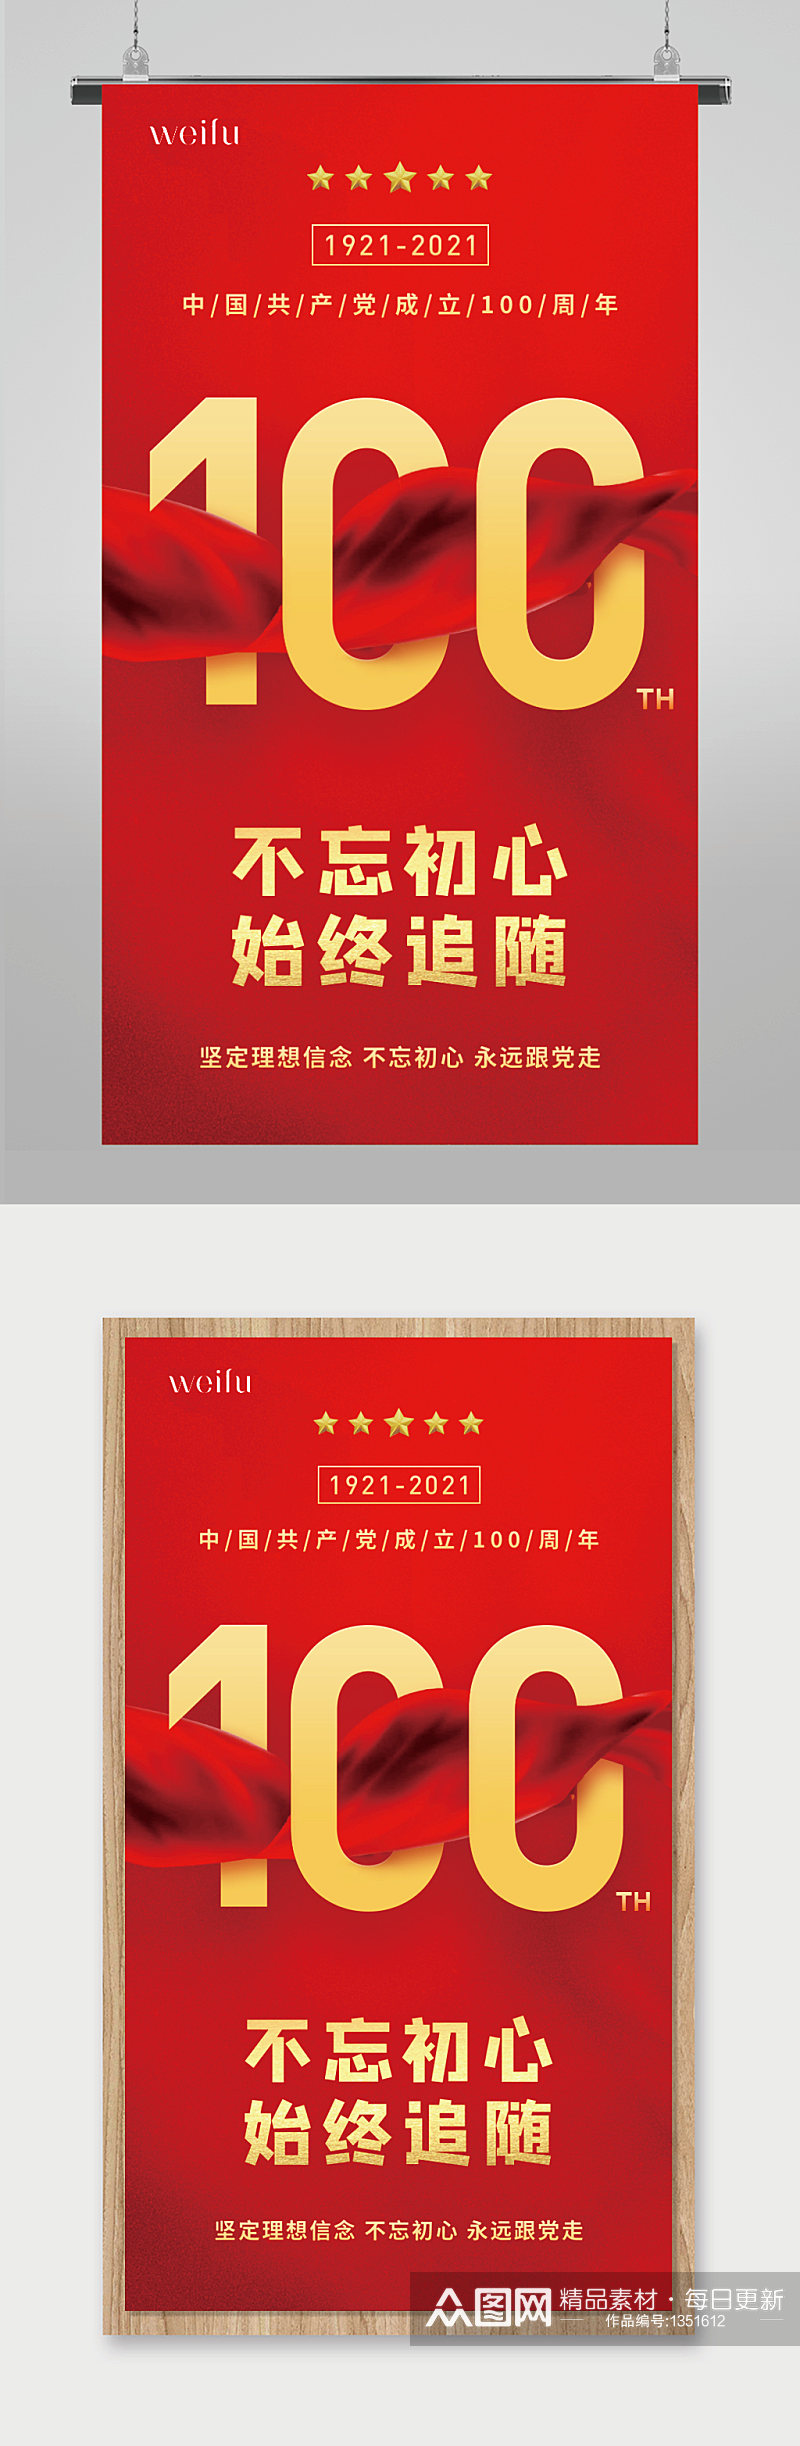 红色红绸建党100周年建党节海报素材